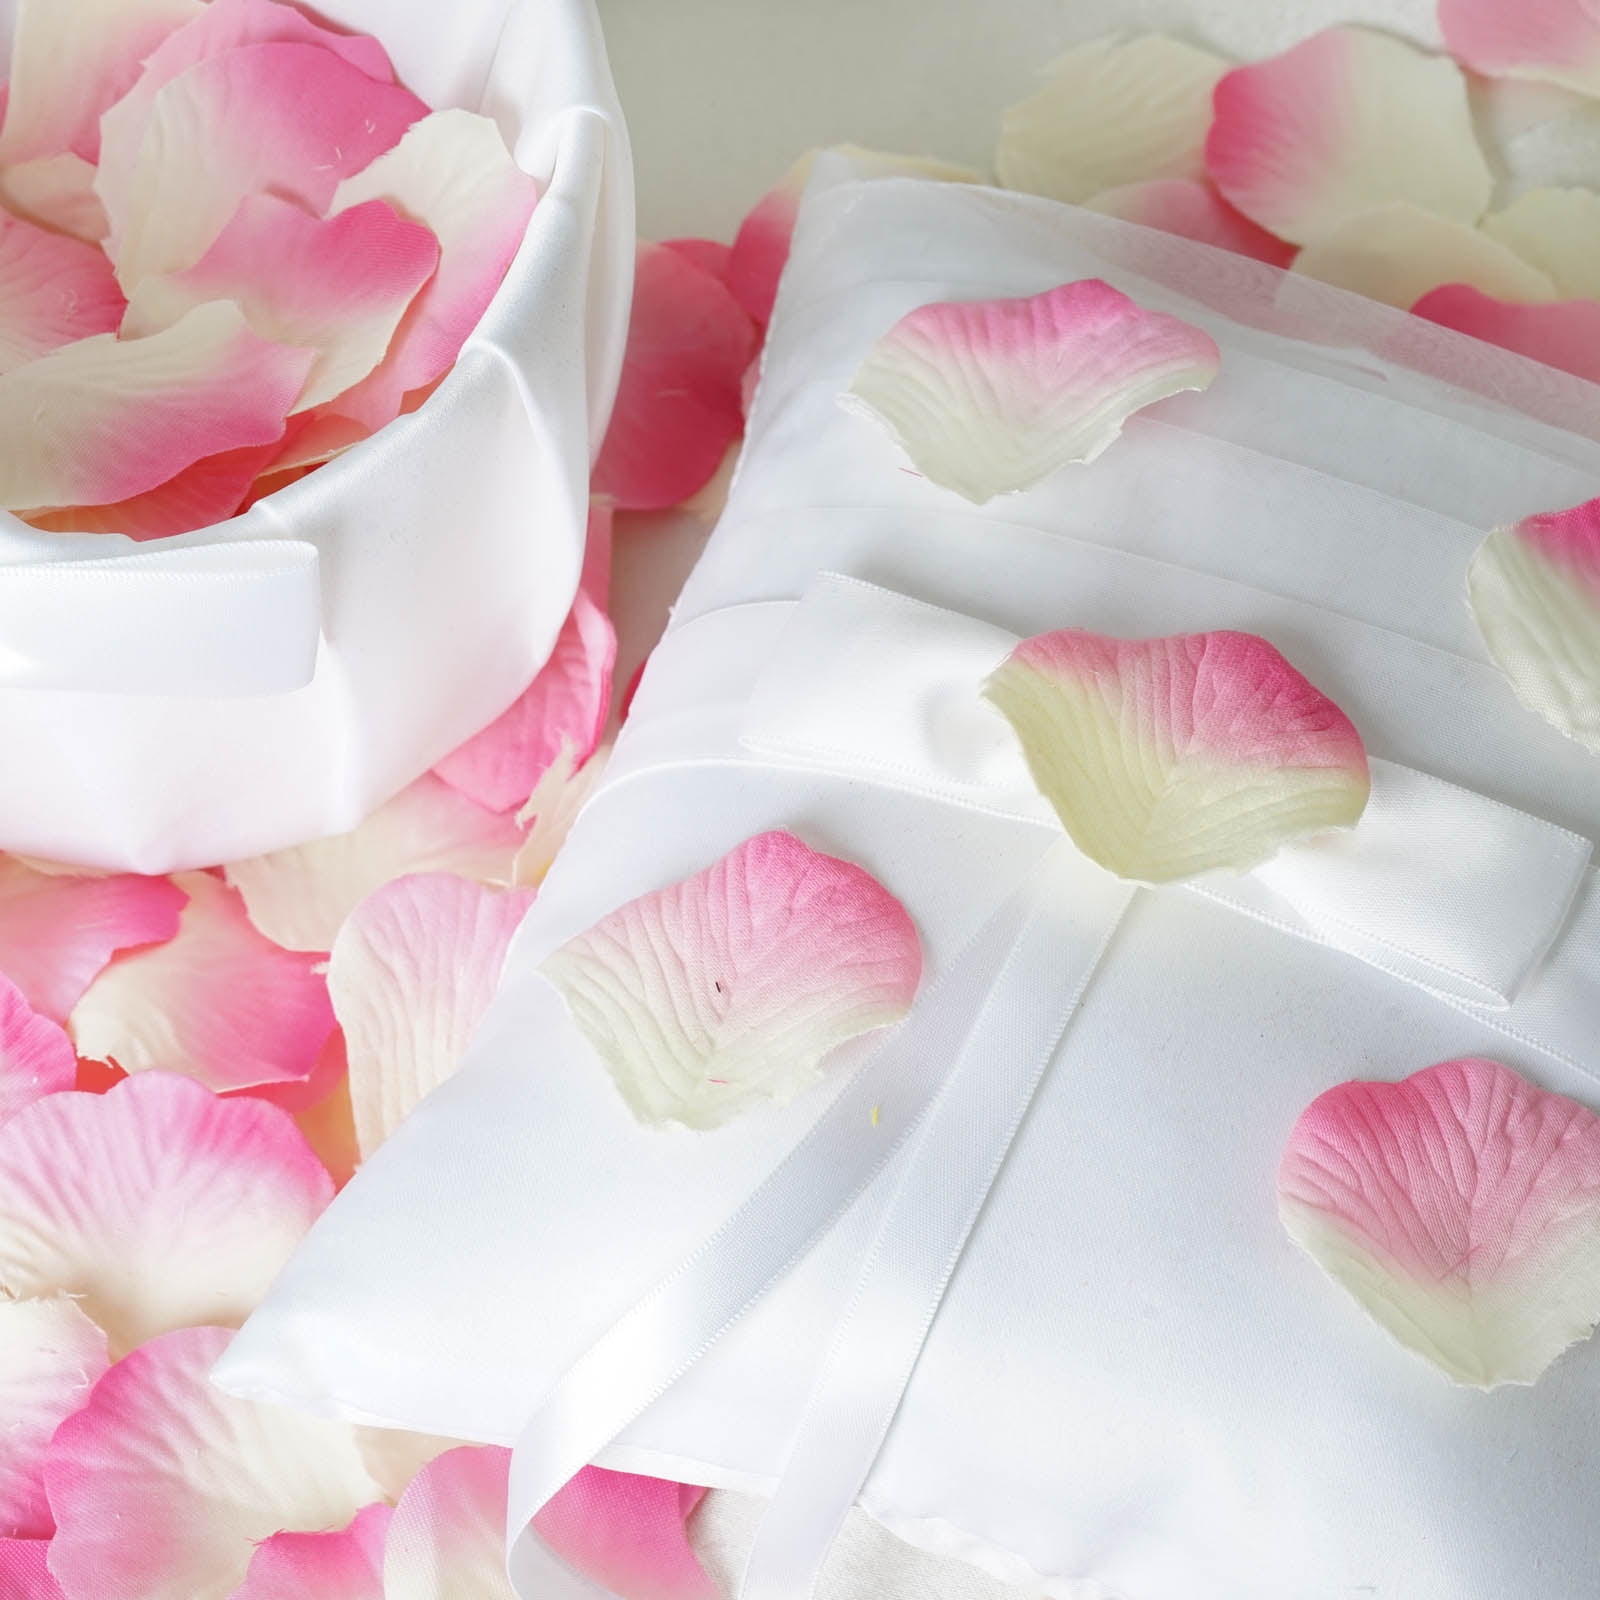 500-10000pcs Wholesale Wedding Rose Petals Decorations Flowers